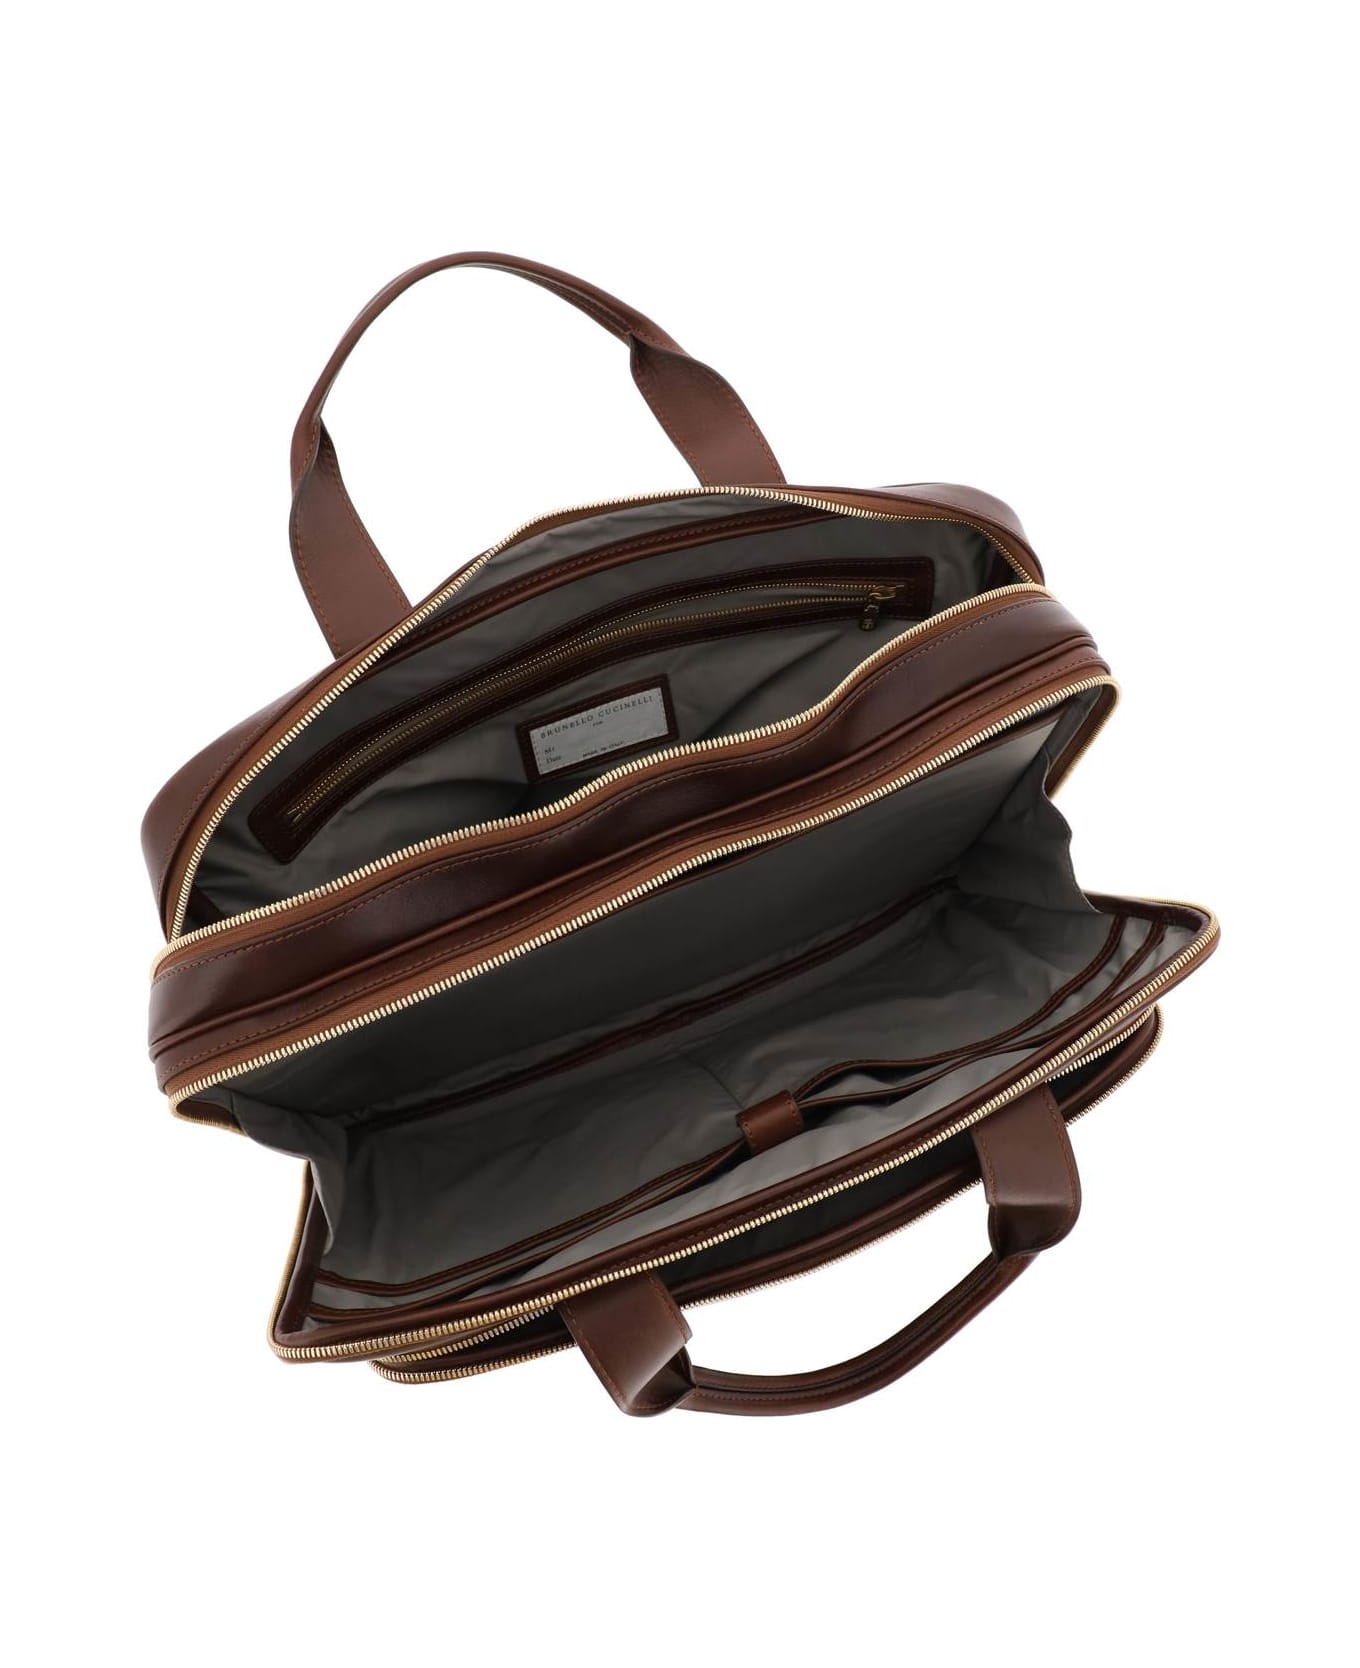 Brunello Cucinelli Leather Handbag - BURGUNDY (Brown)